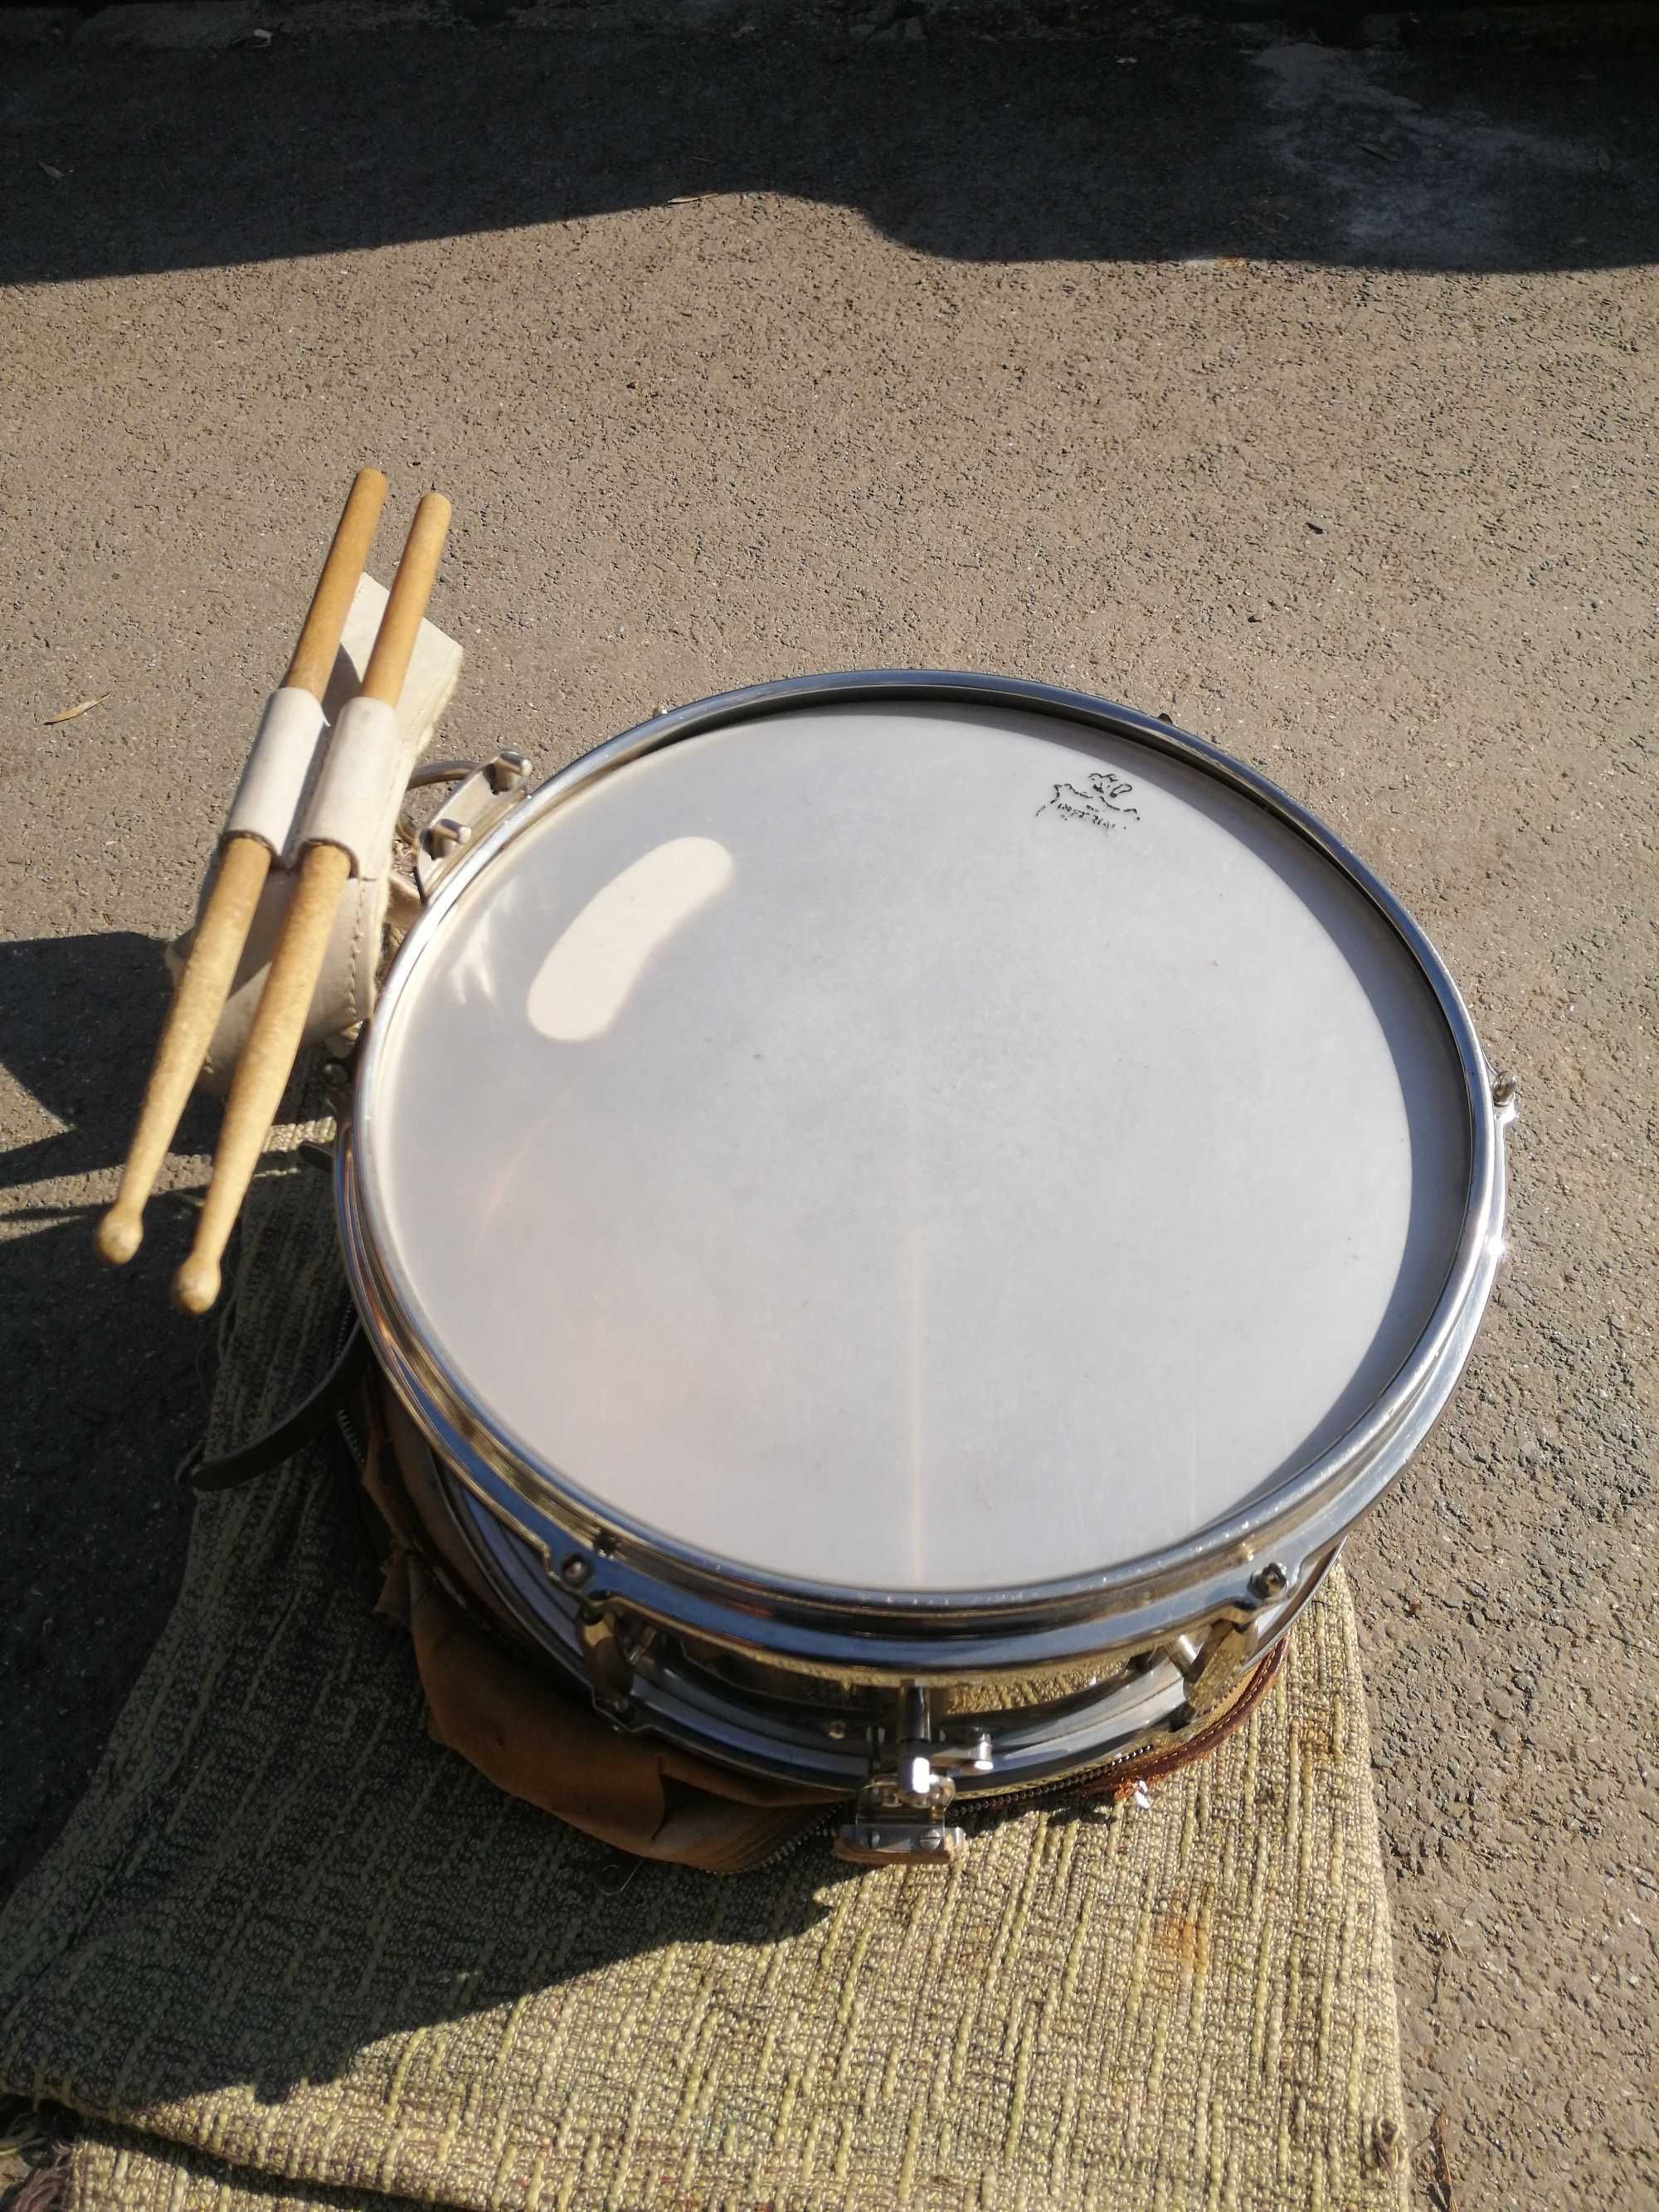 Drums Imperial Switzerland Snare,size 14x6,centură cu bete, 1250 Lei